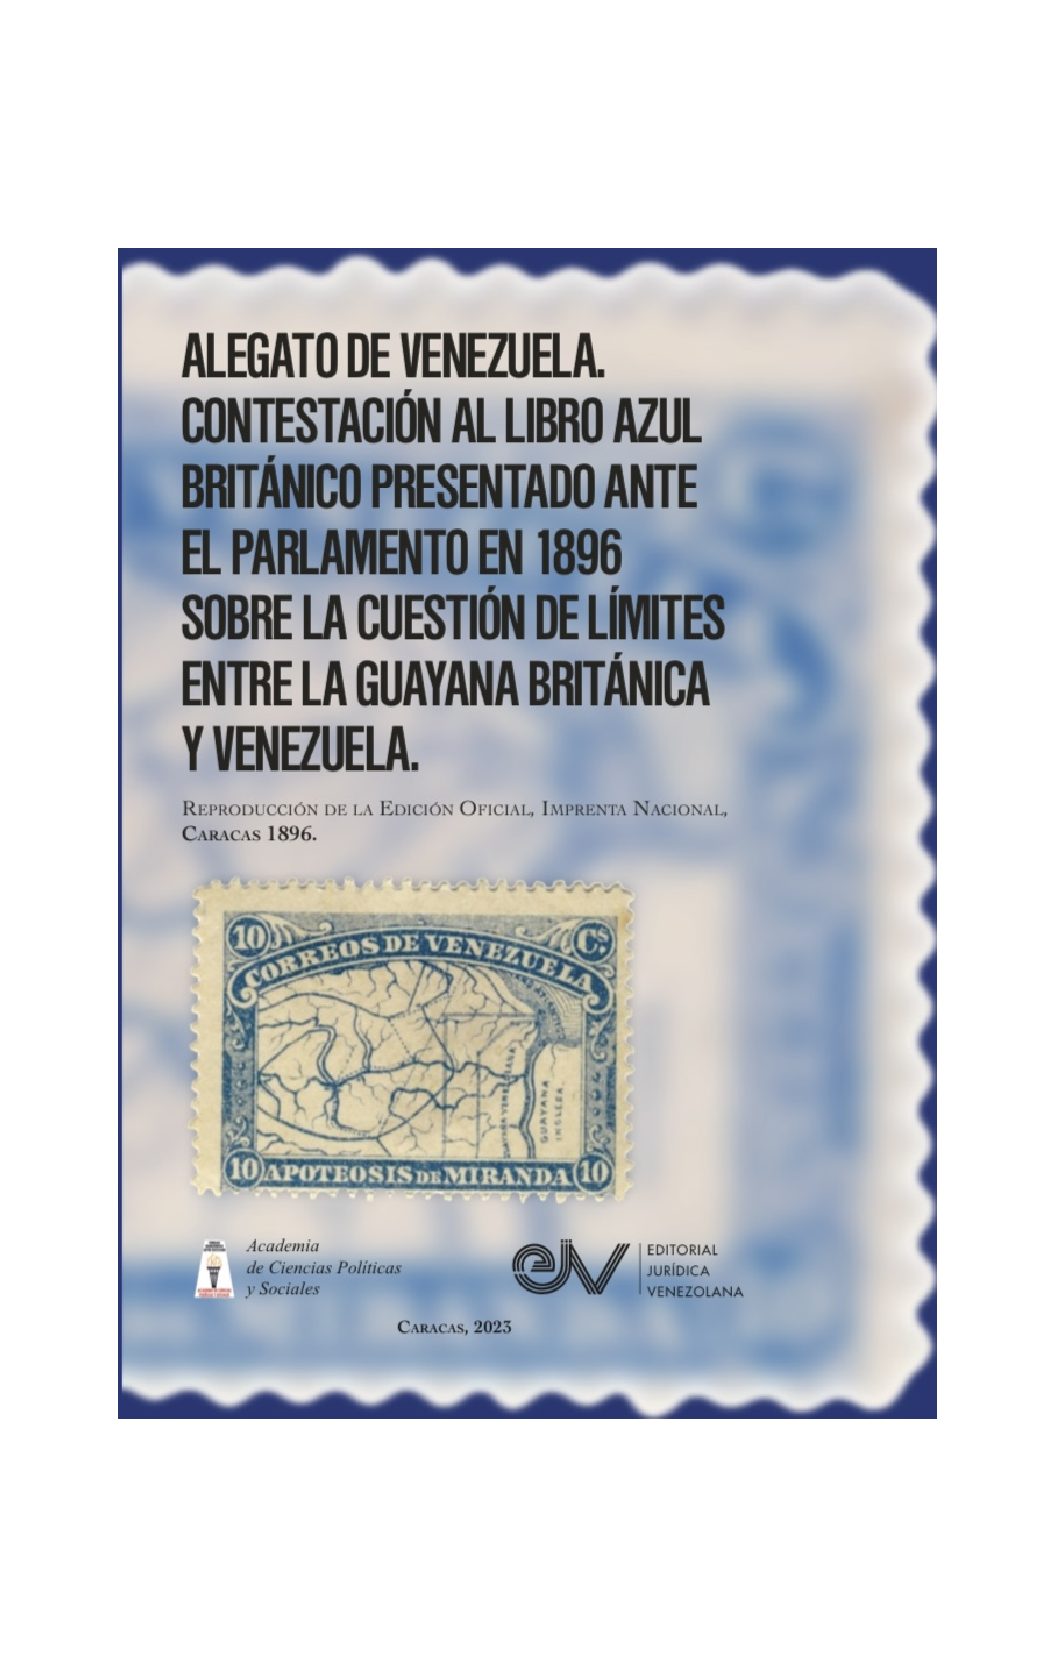 Disponible a texto completo el séptimo libro de la serie de la Academia de Ciencias Políticas y Sociales sobre controversia del Esequibo: Alegato de Venezuela. Contestación al Libro Azul